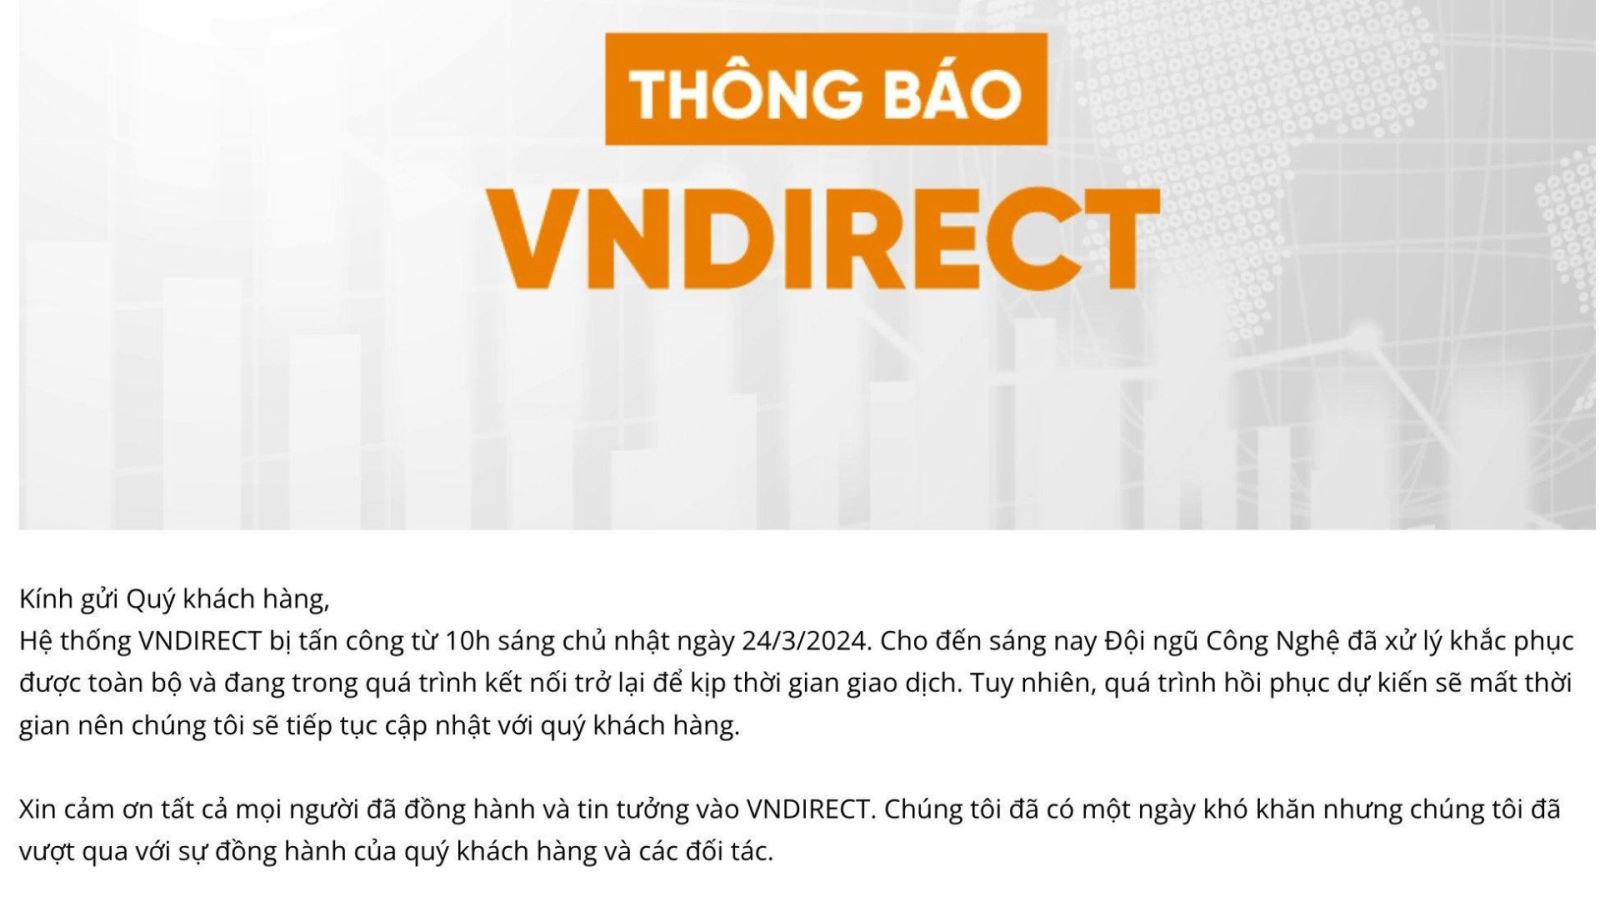 Thông báo của VNDirect gửi tới các nhà đầu tư 